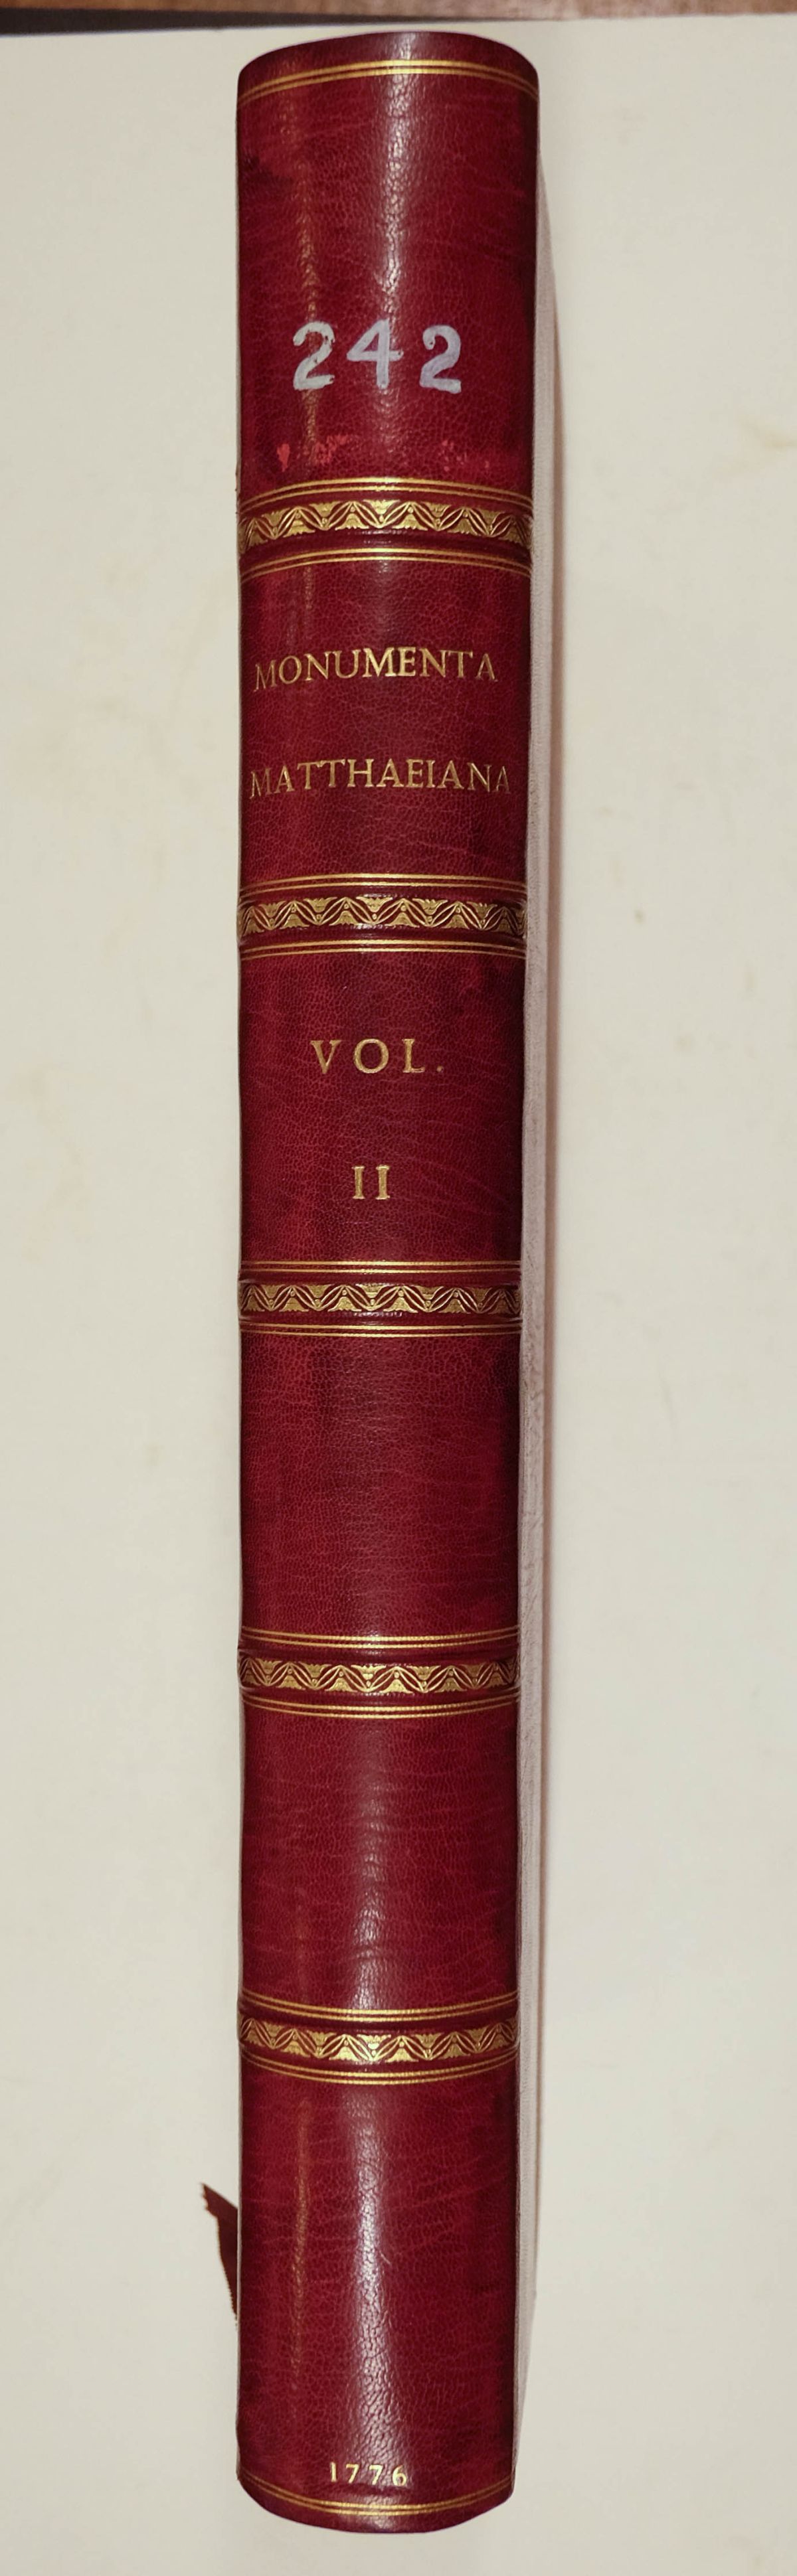 Venuti (Ridolfino). Vetera Monumenta quae in Hortis Caelimontanis, 3 vols., Rome, 1776-79 - Image 10 of 18